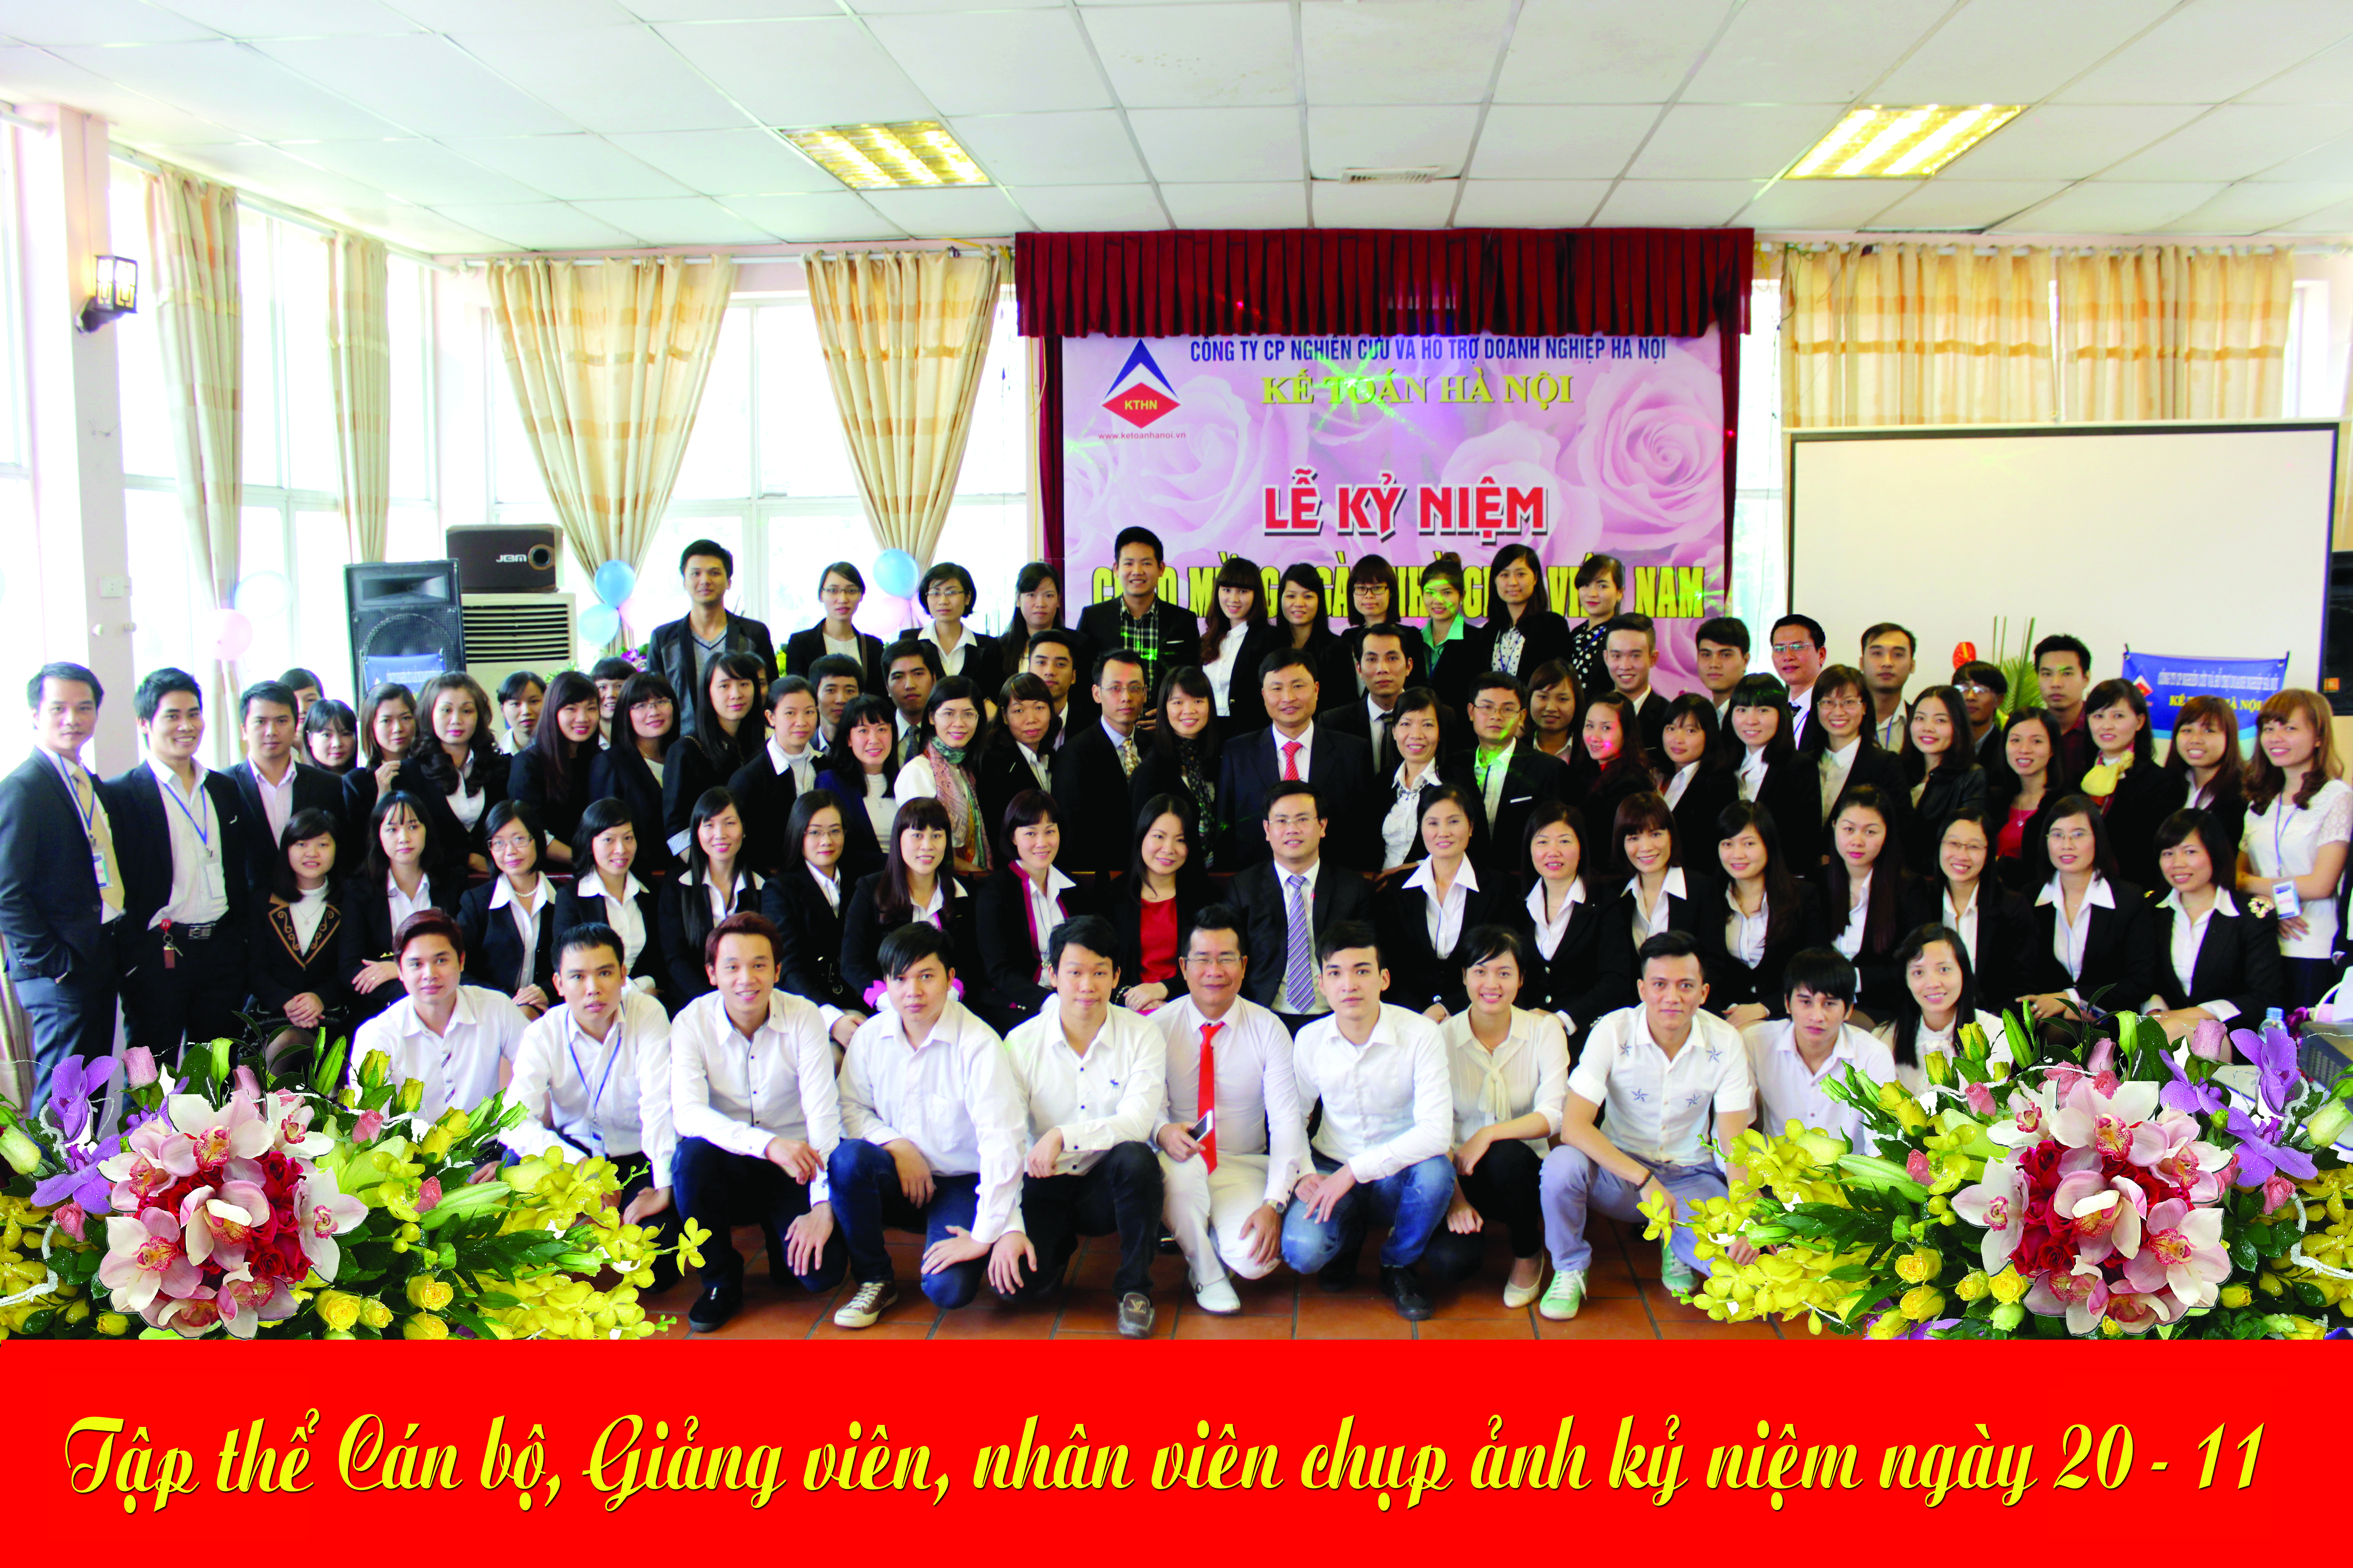 Trung tâm dạy kế toán tổng hợp tại Thanh Xuân